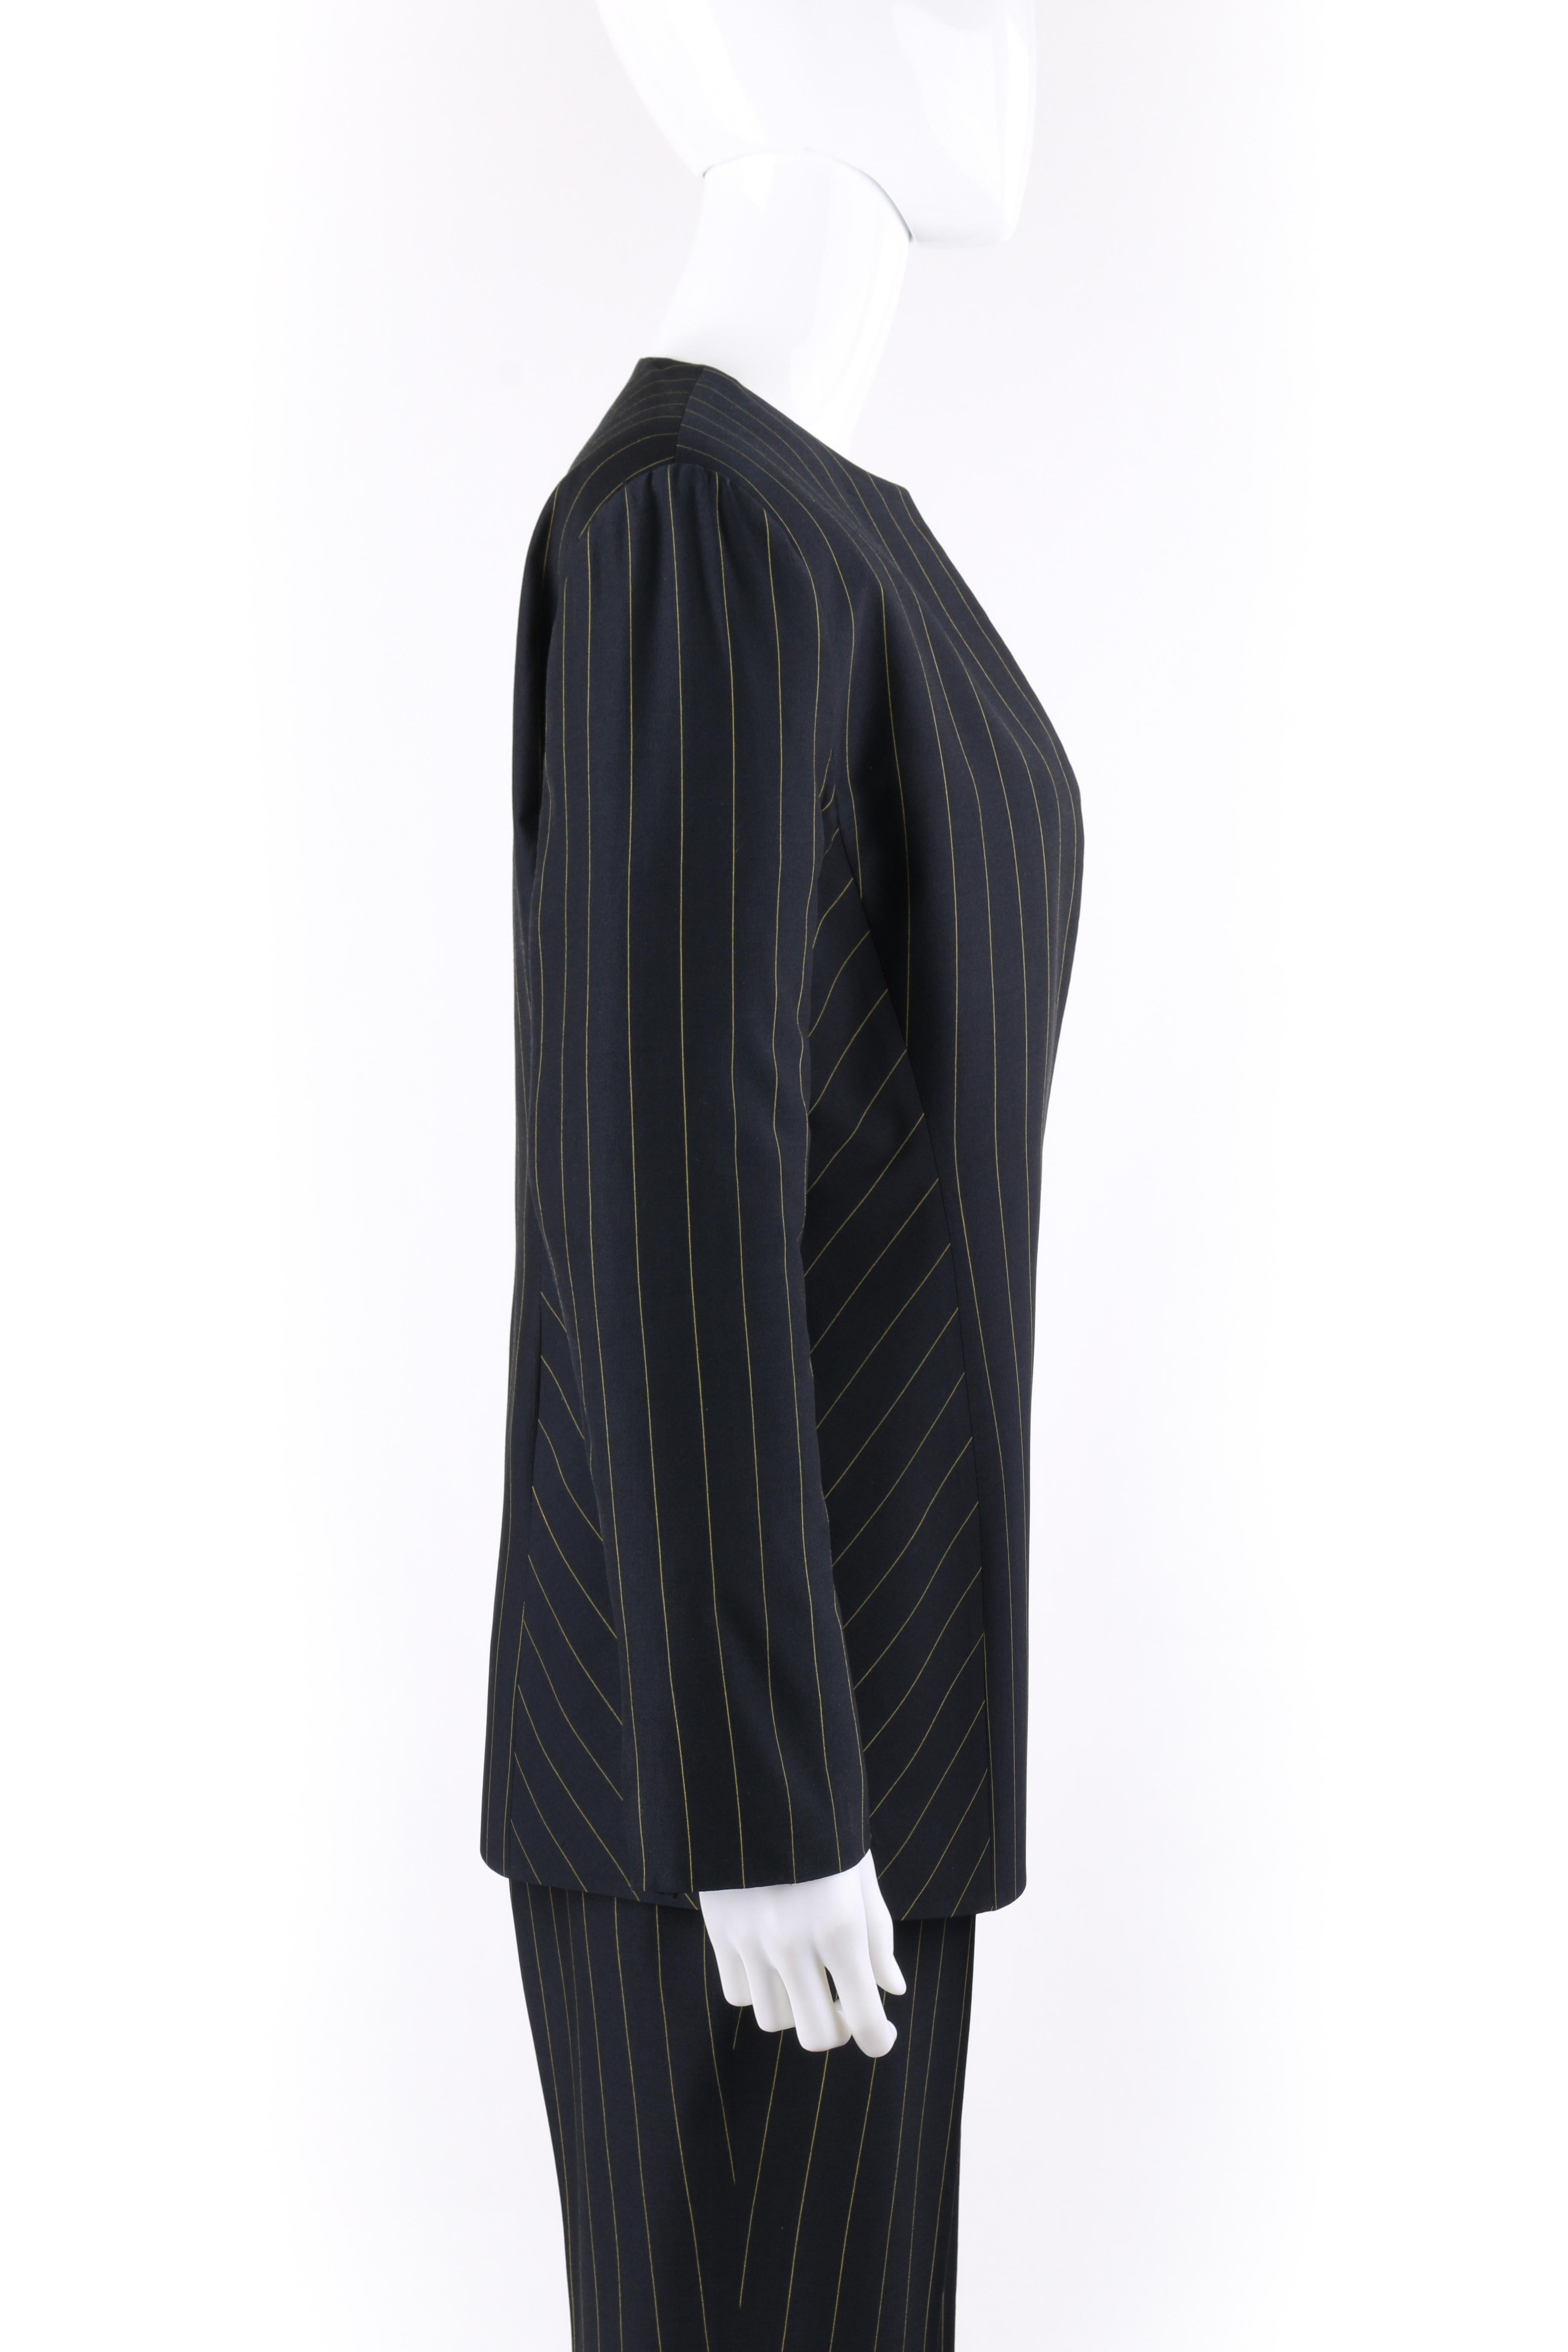 Black GIANNI VERSACE COUTURE c.1980's Navy Pinstripe Jacket Trouser Pant Suit Set